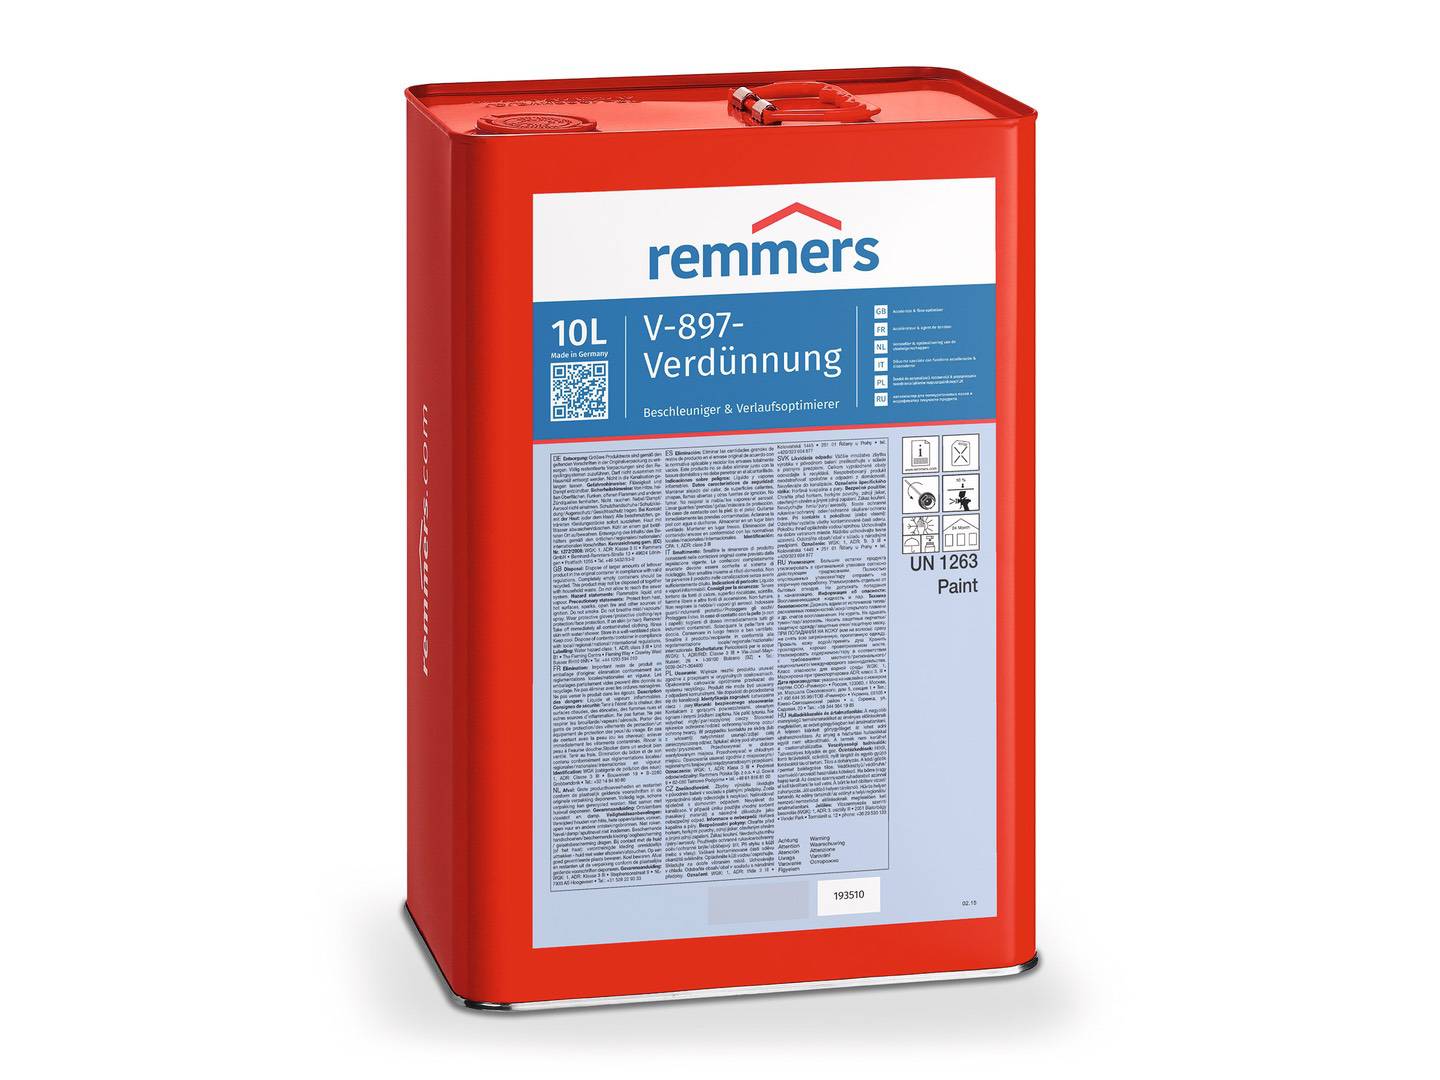 REMMERS V-897-Verdünnung farblos 10 l